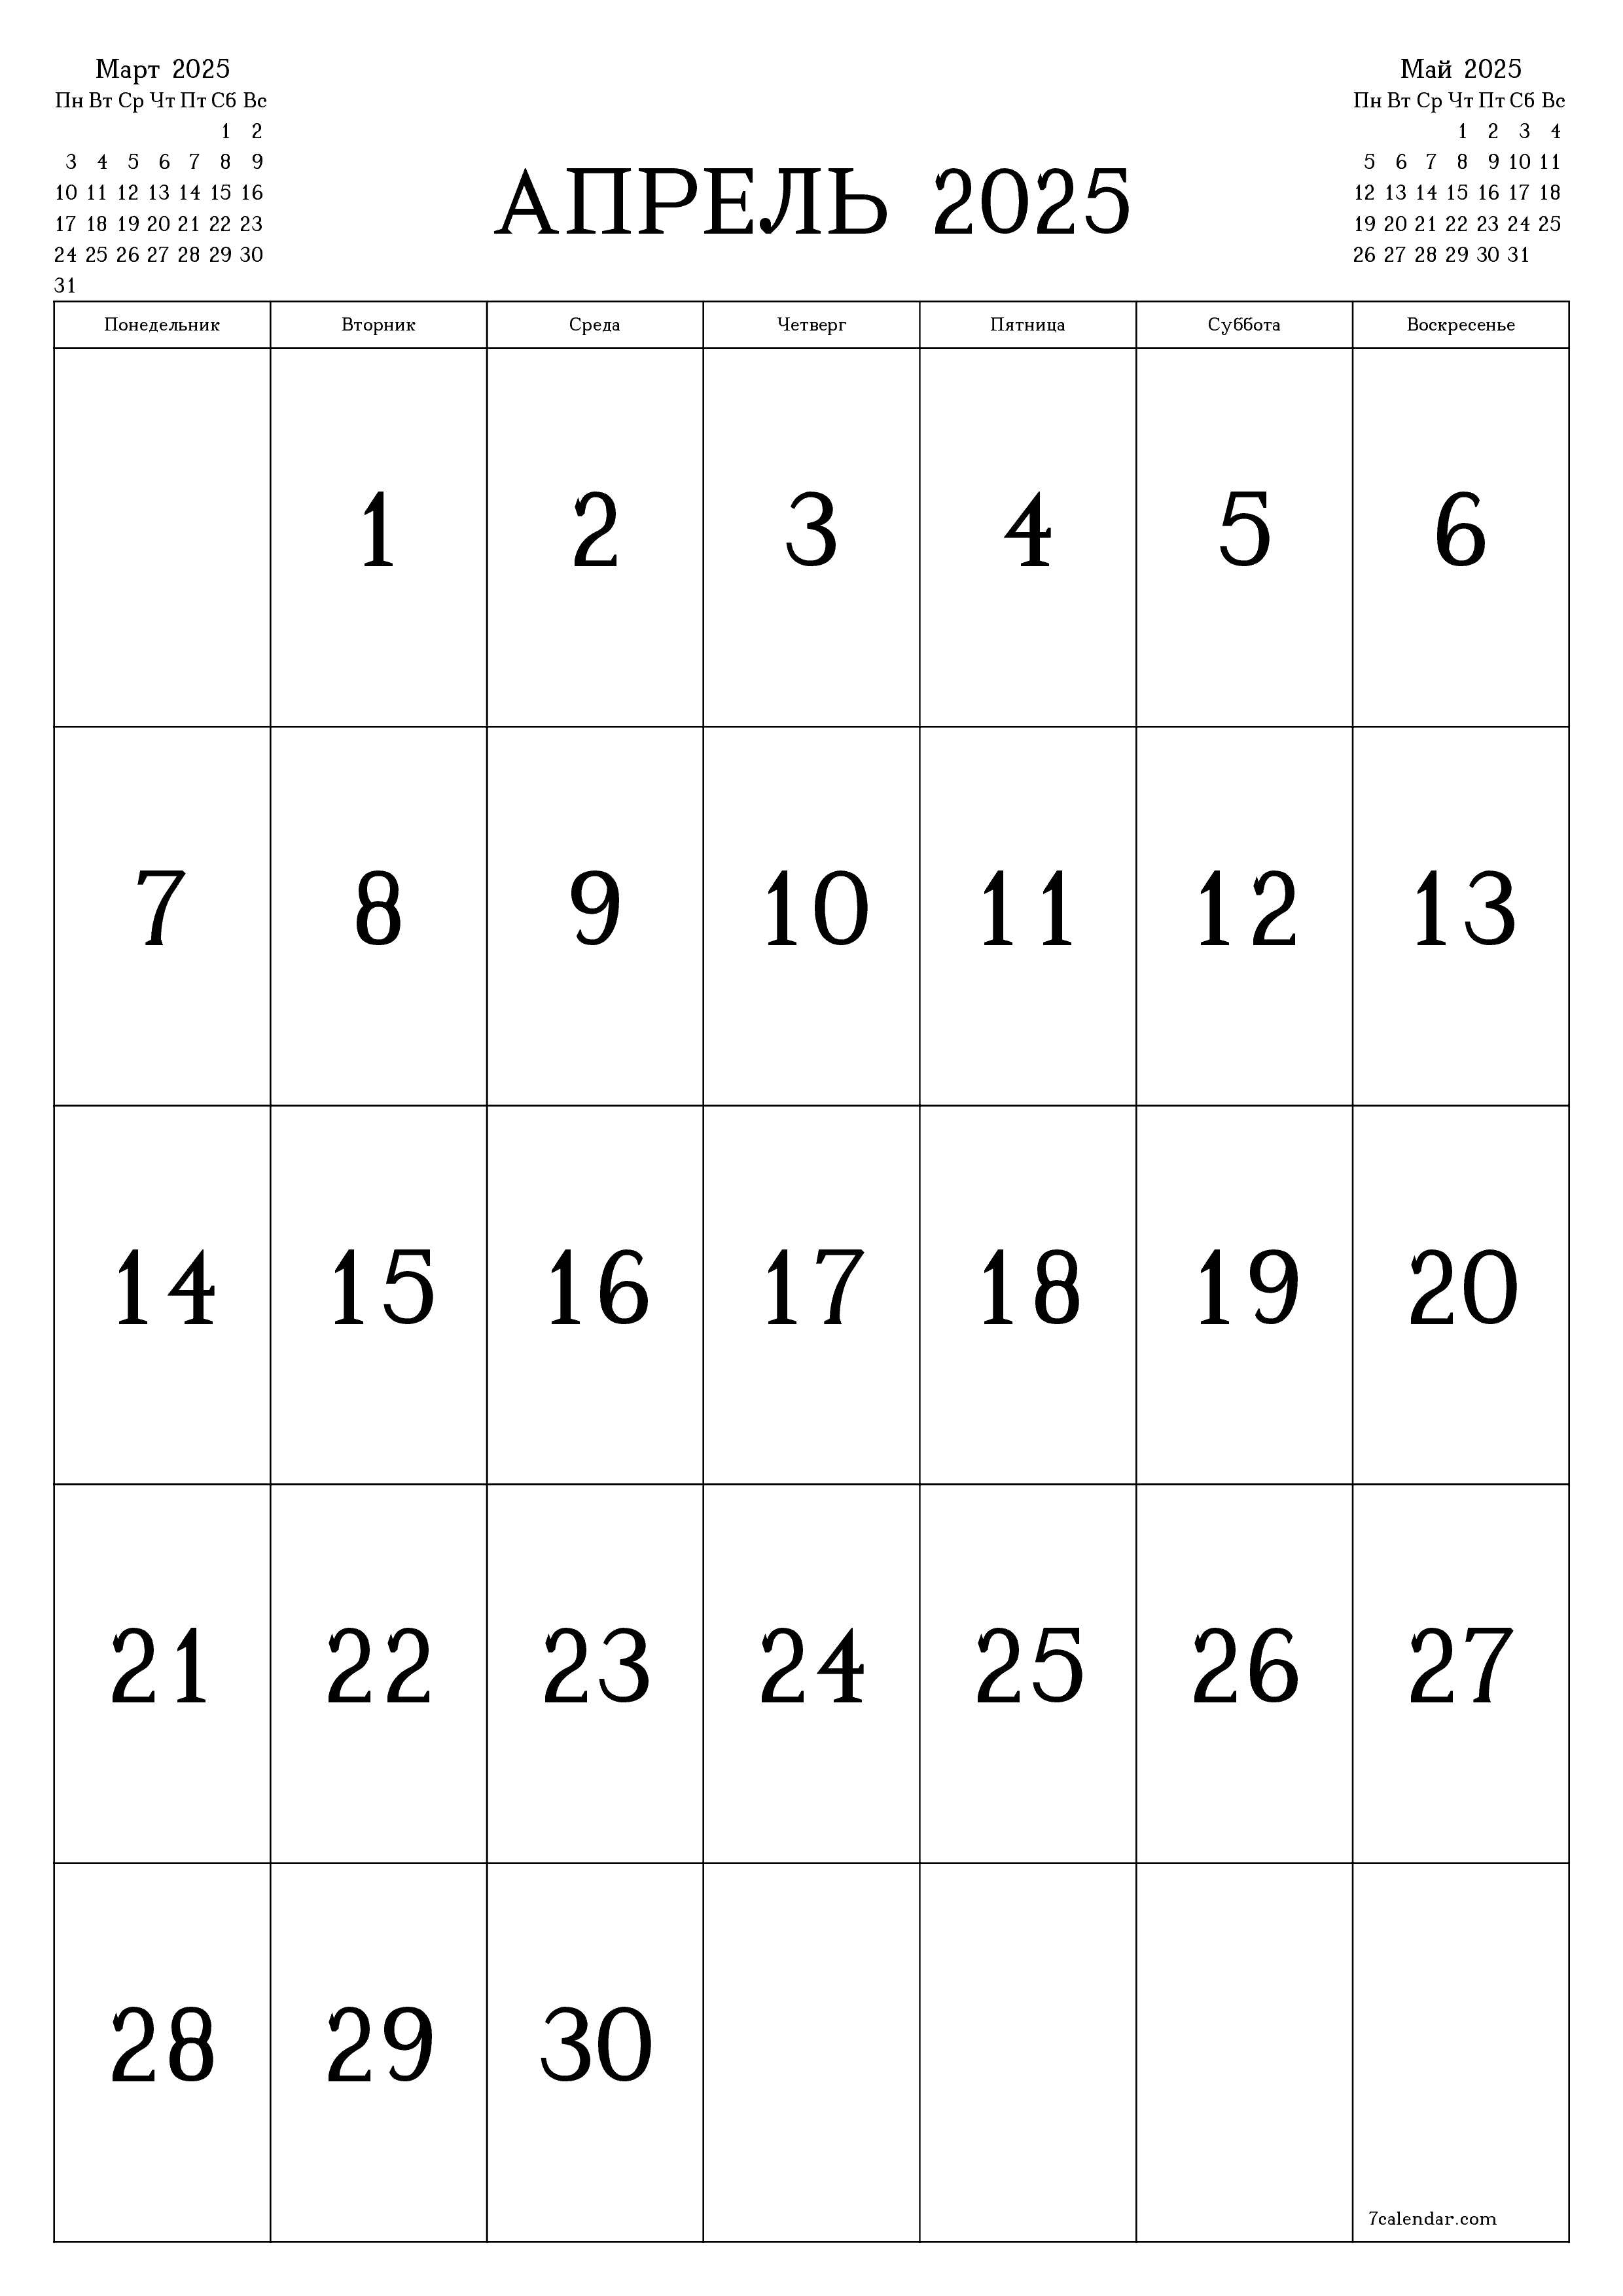 Пустой ежемесячный календарь-планер на месяц Апрель 2025